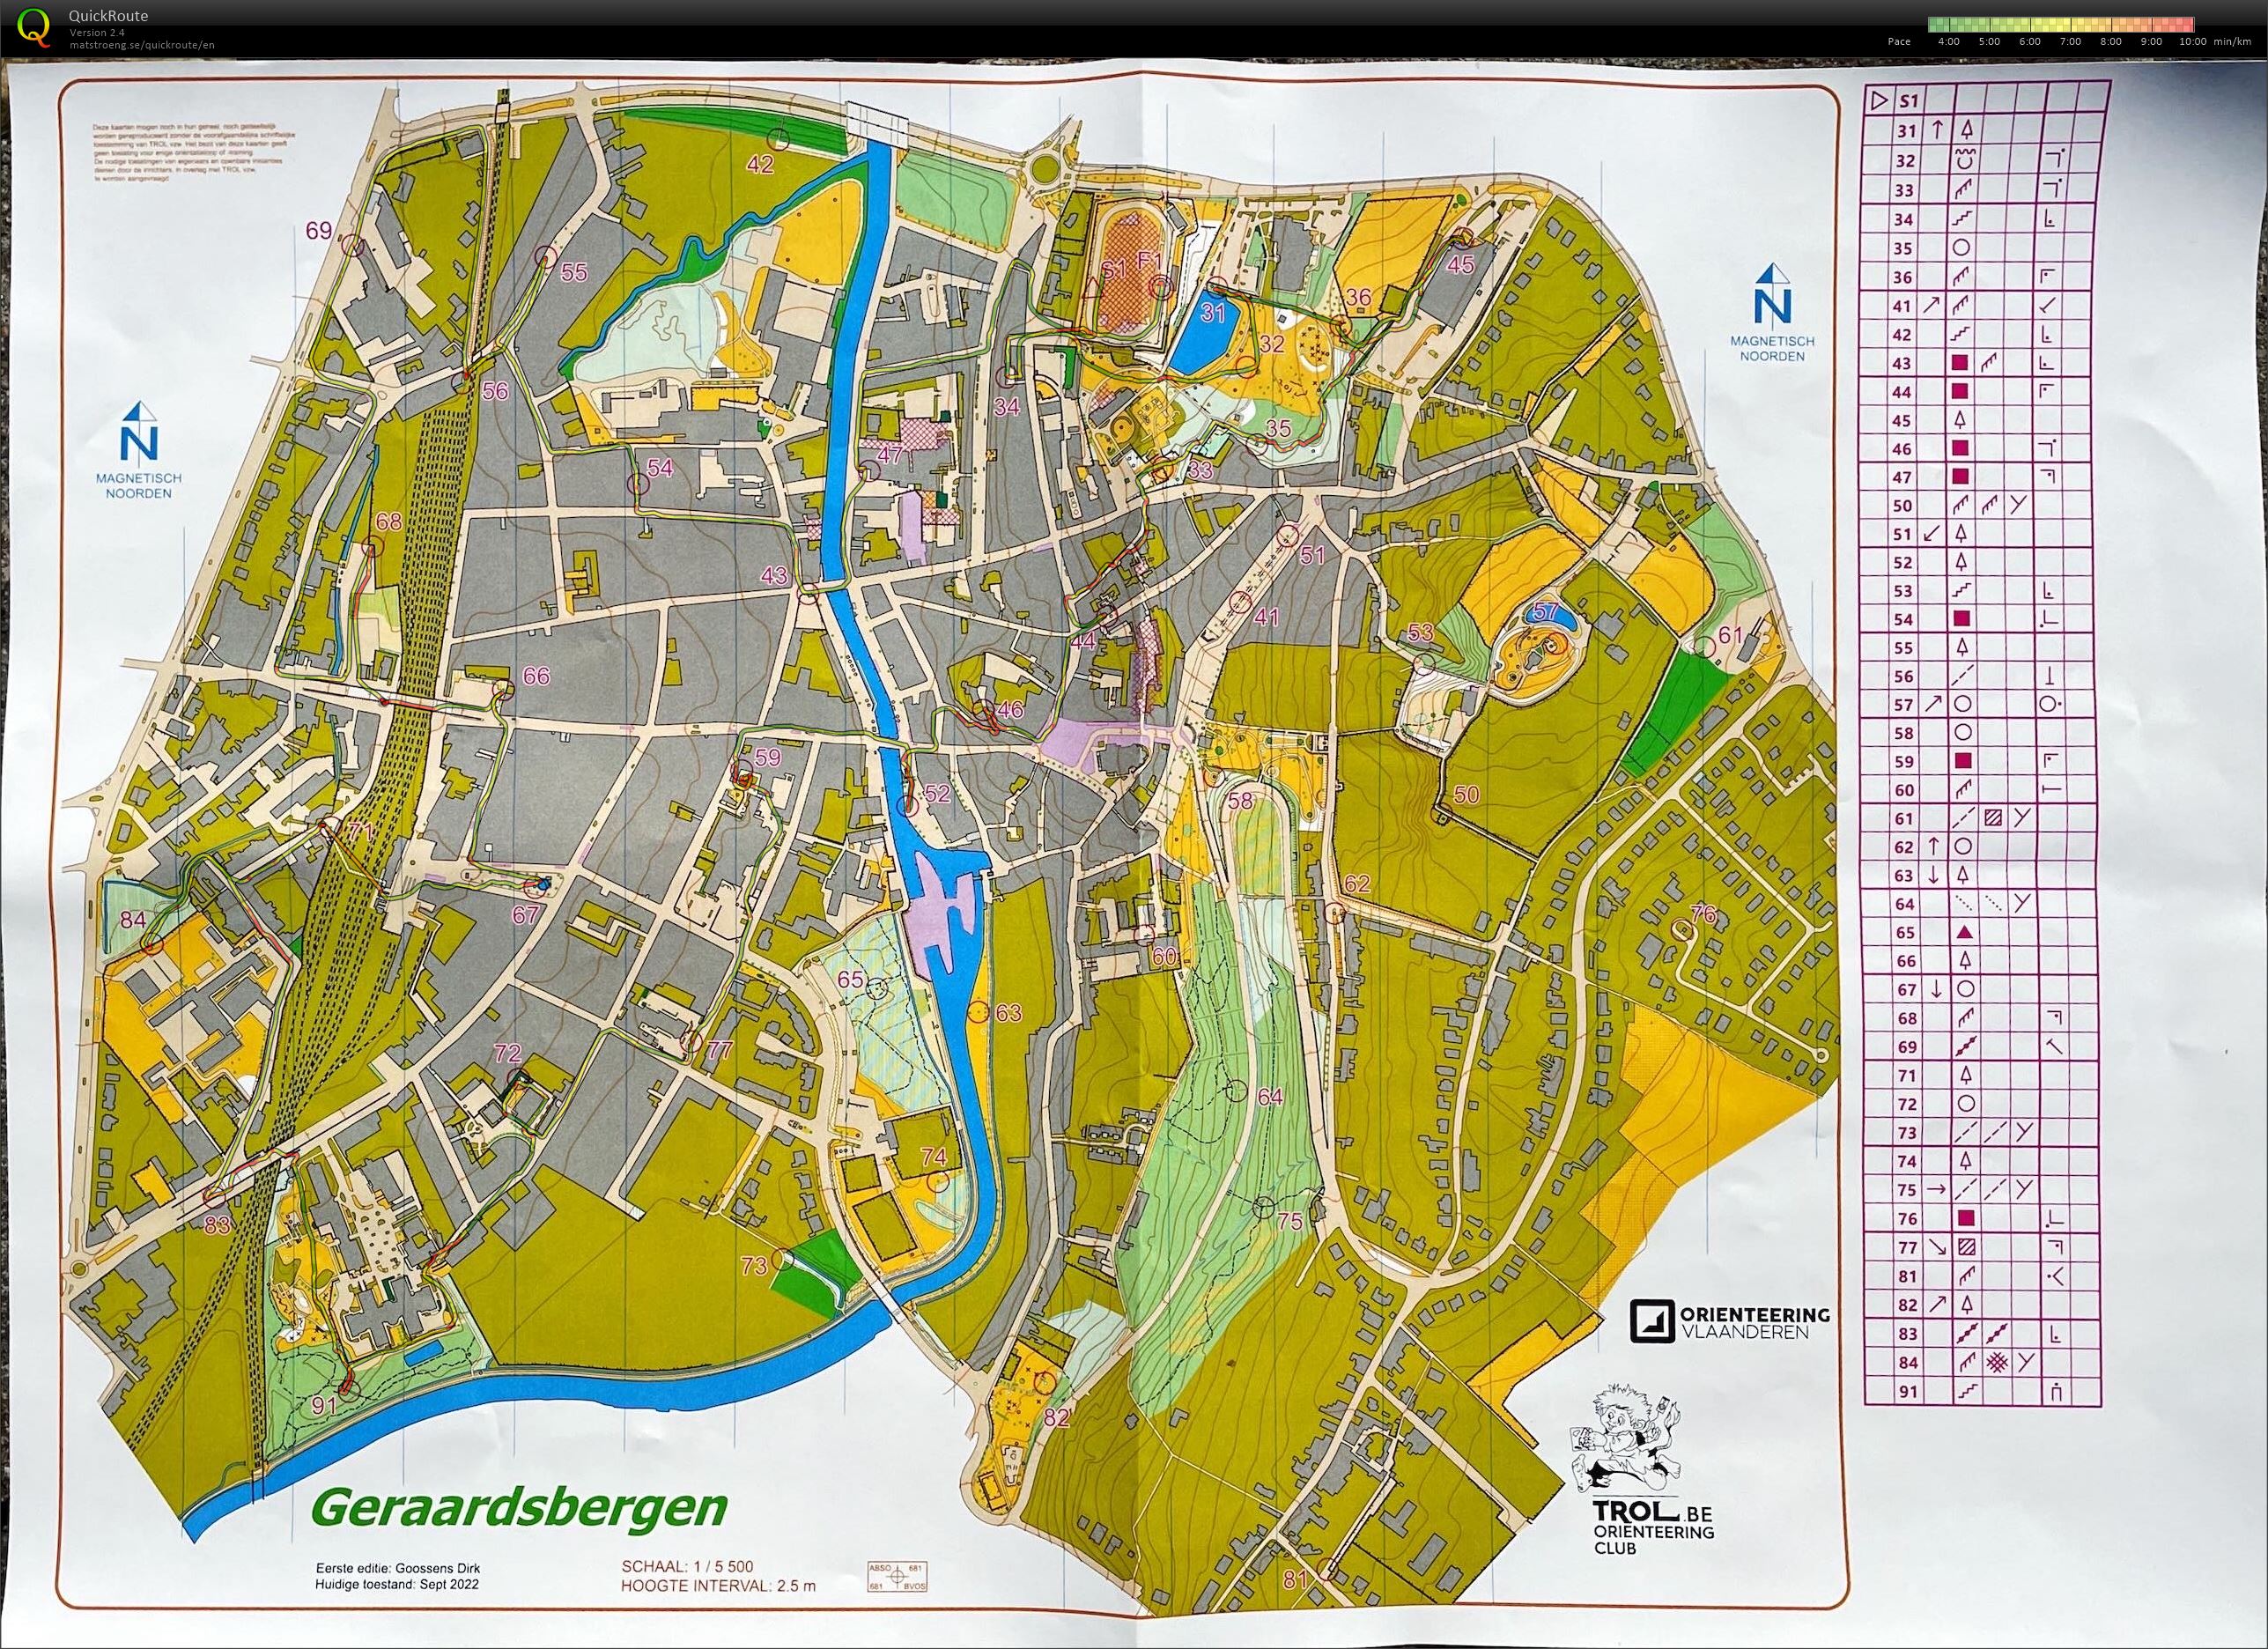 Scoreloop Geraardsbergen (25-09-2022)